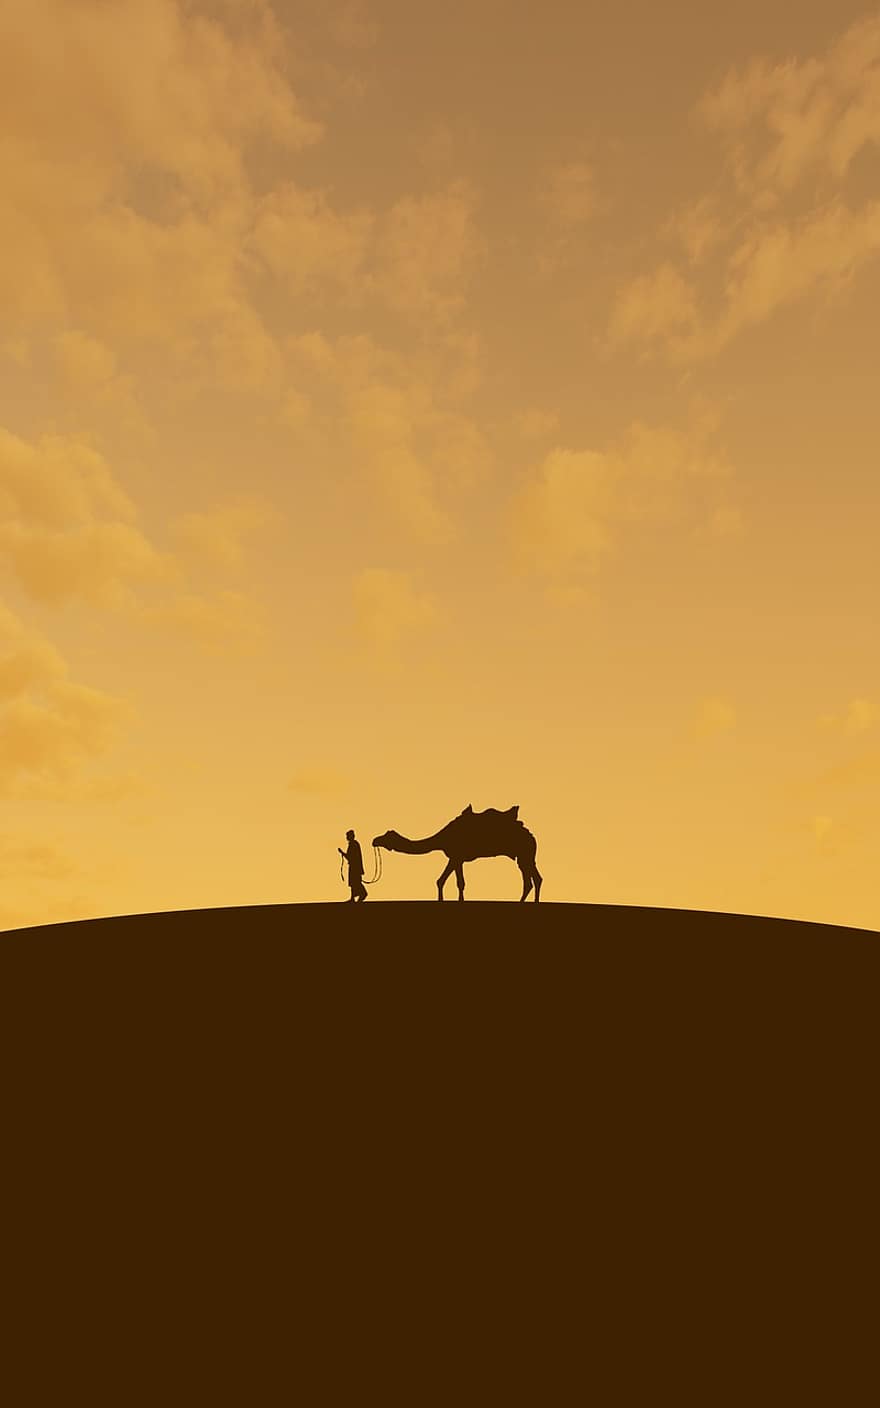 Desert, Camel, Orange, Arabian, Safari, Animal, Sky, Arabic, People